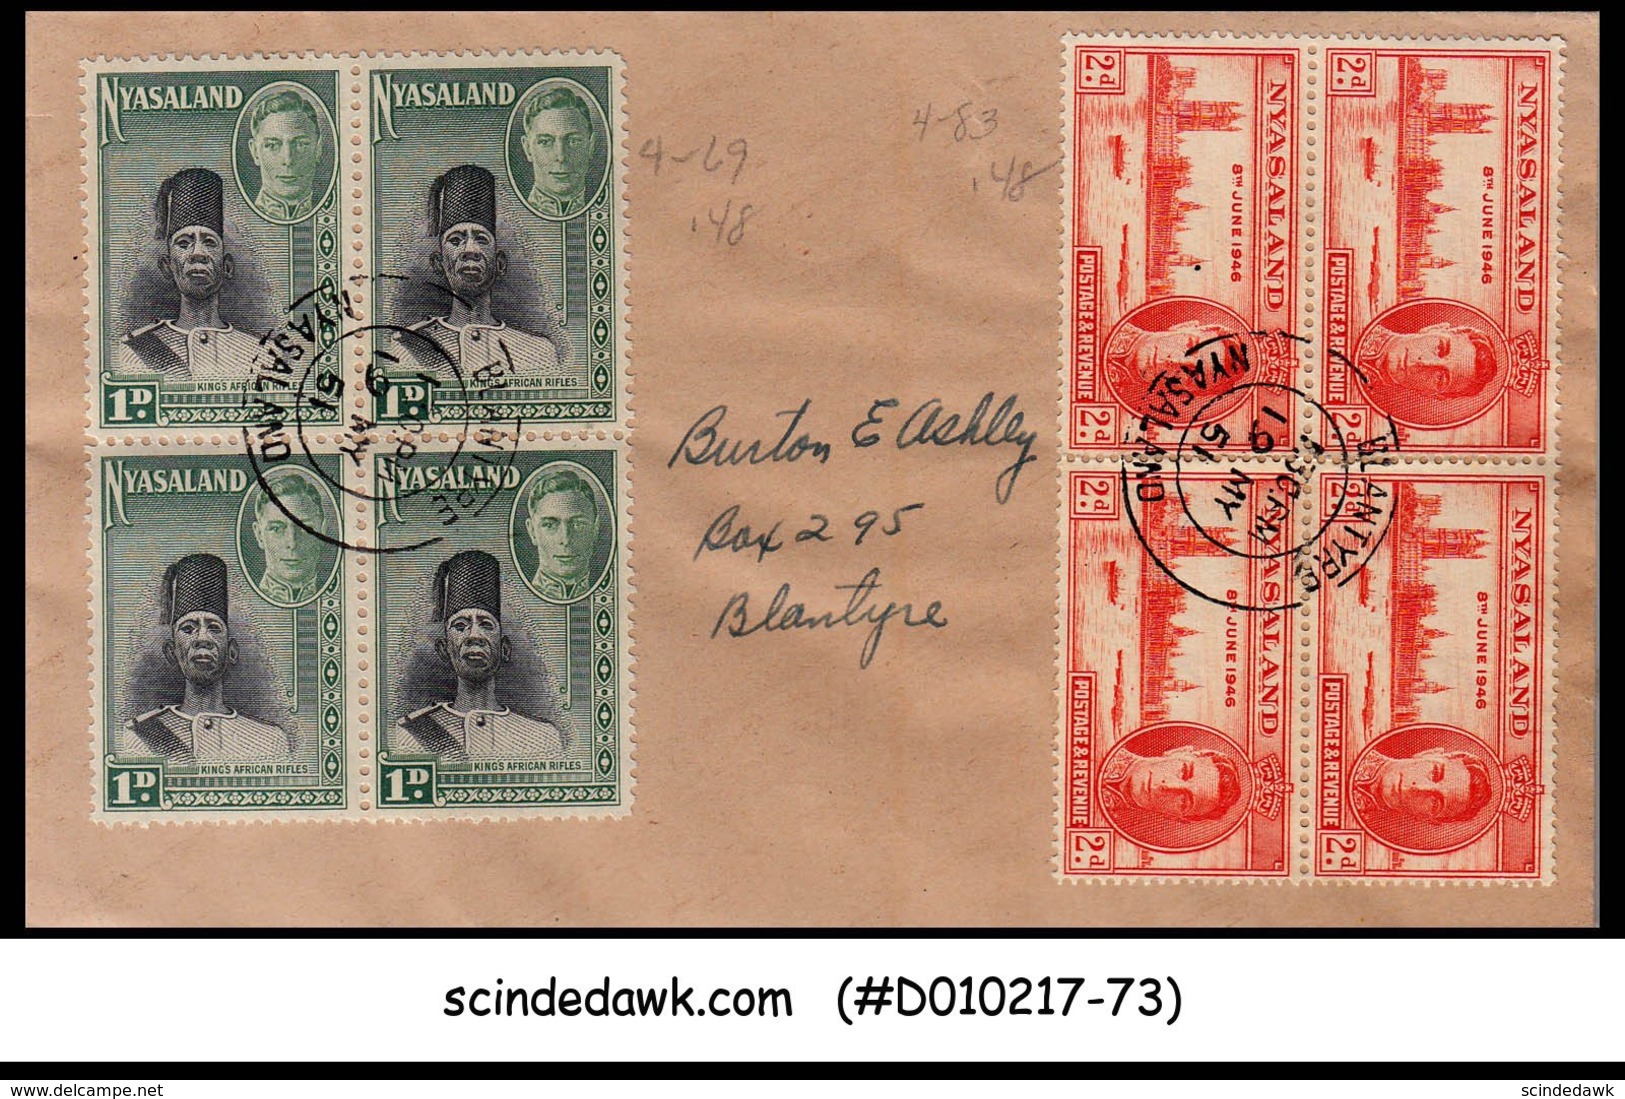 NYASALAND - 1951 Envelope To Blantyre With 8-KGVI Stamps - Nyasaland (1907-1953)